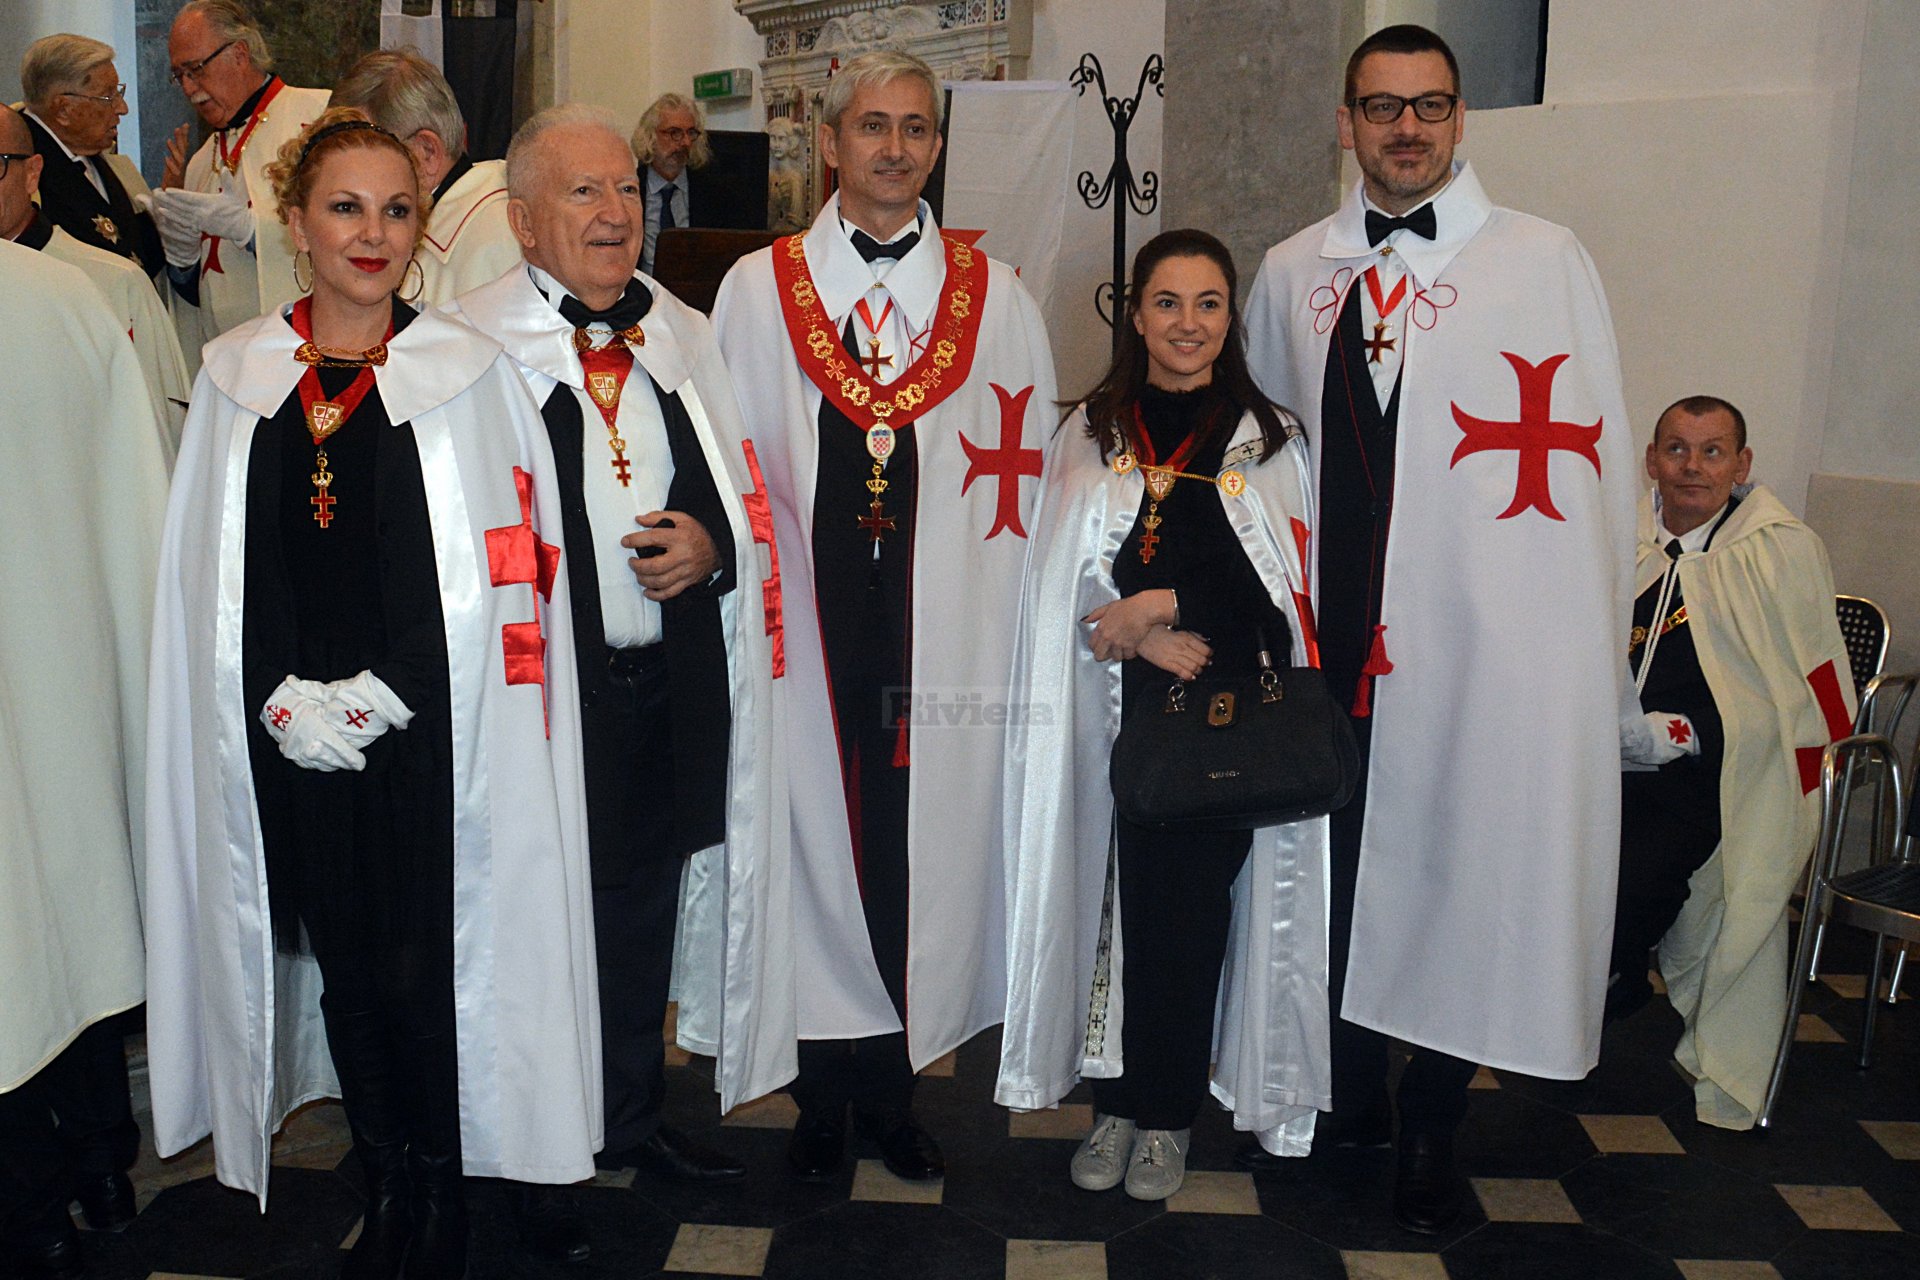 Cavalieri Templari ex chiesa San Francesco Ventimiglia 1 dicembre 2018_02